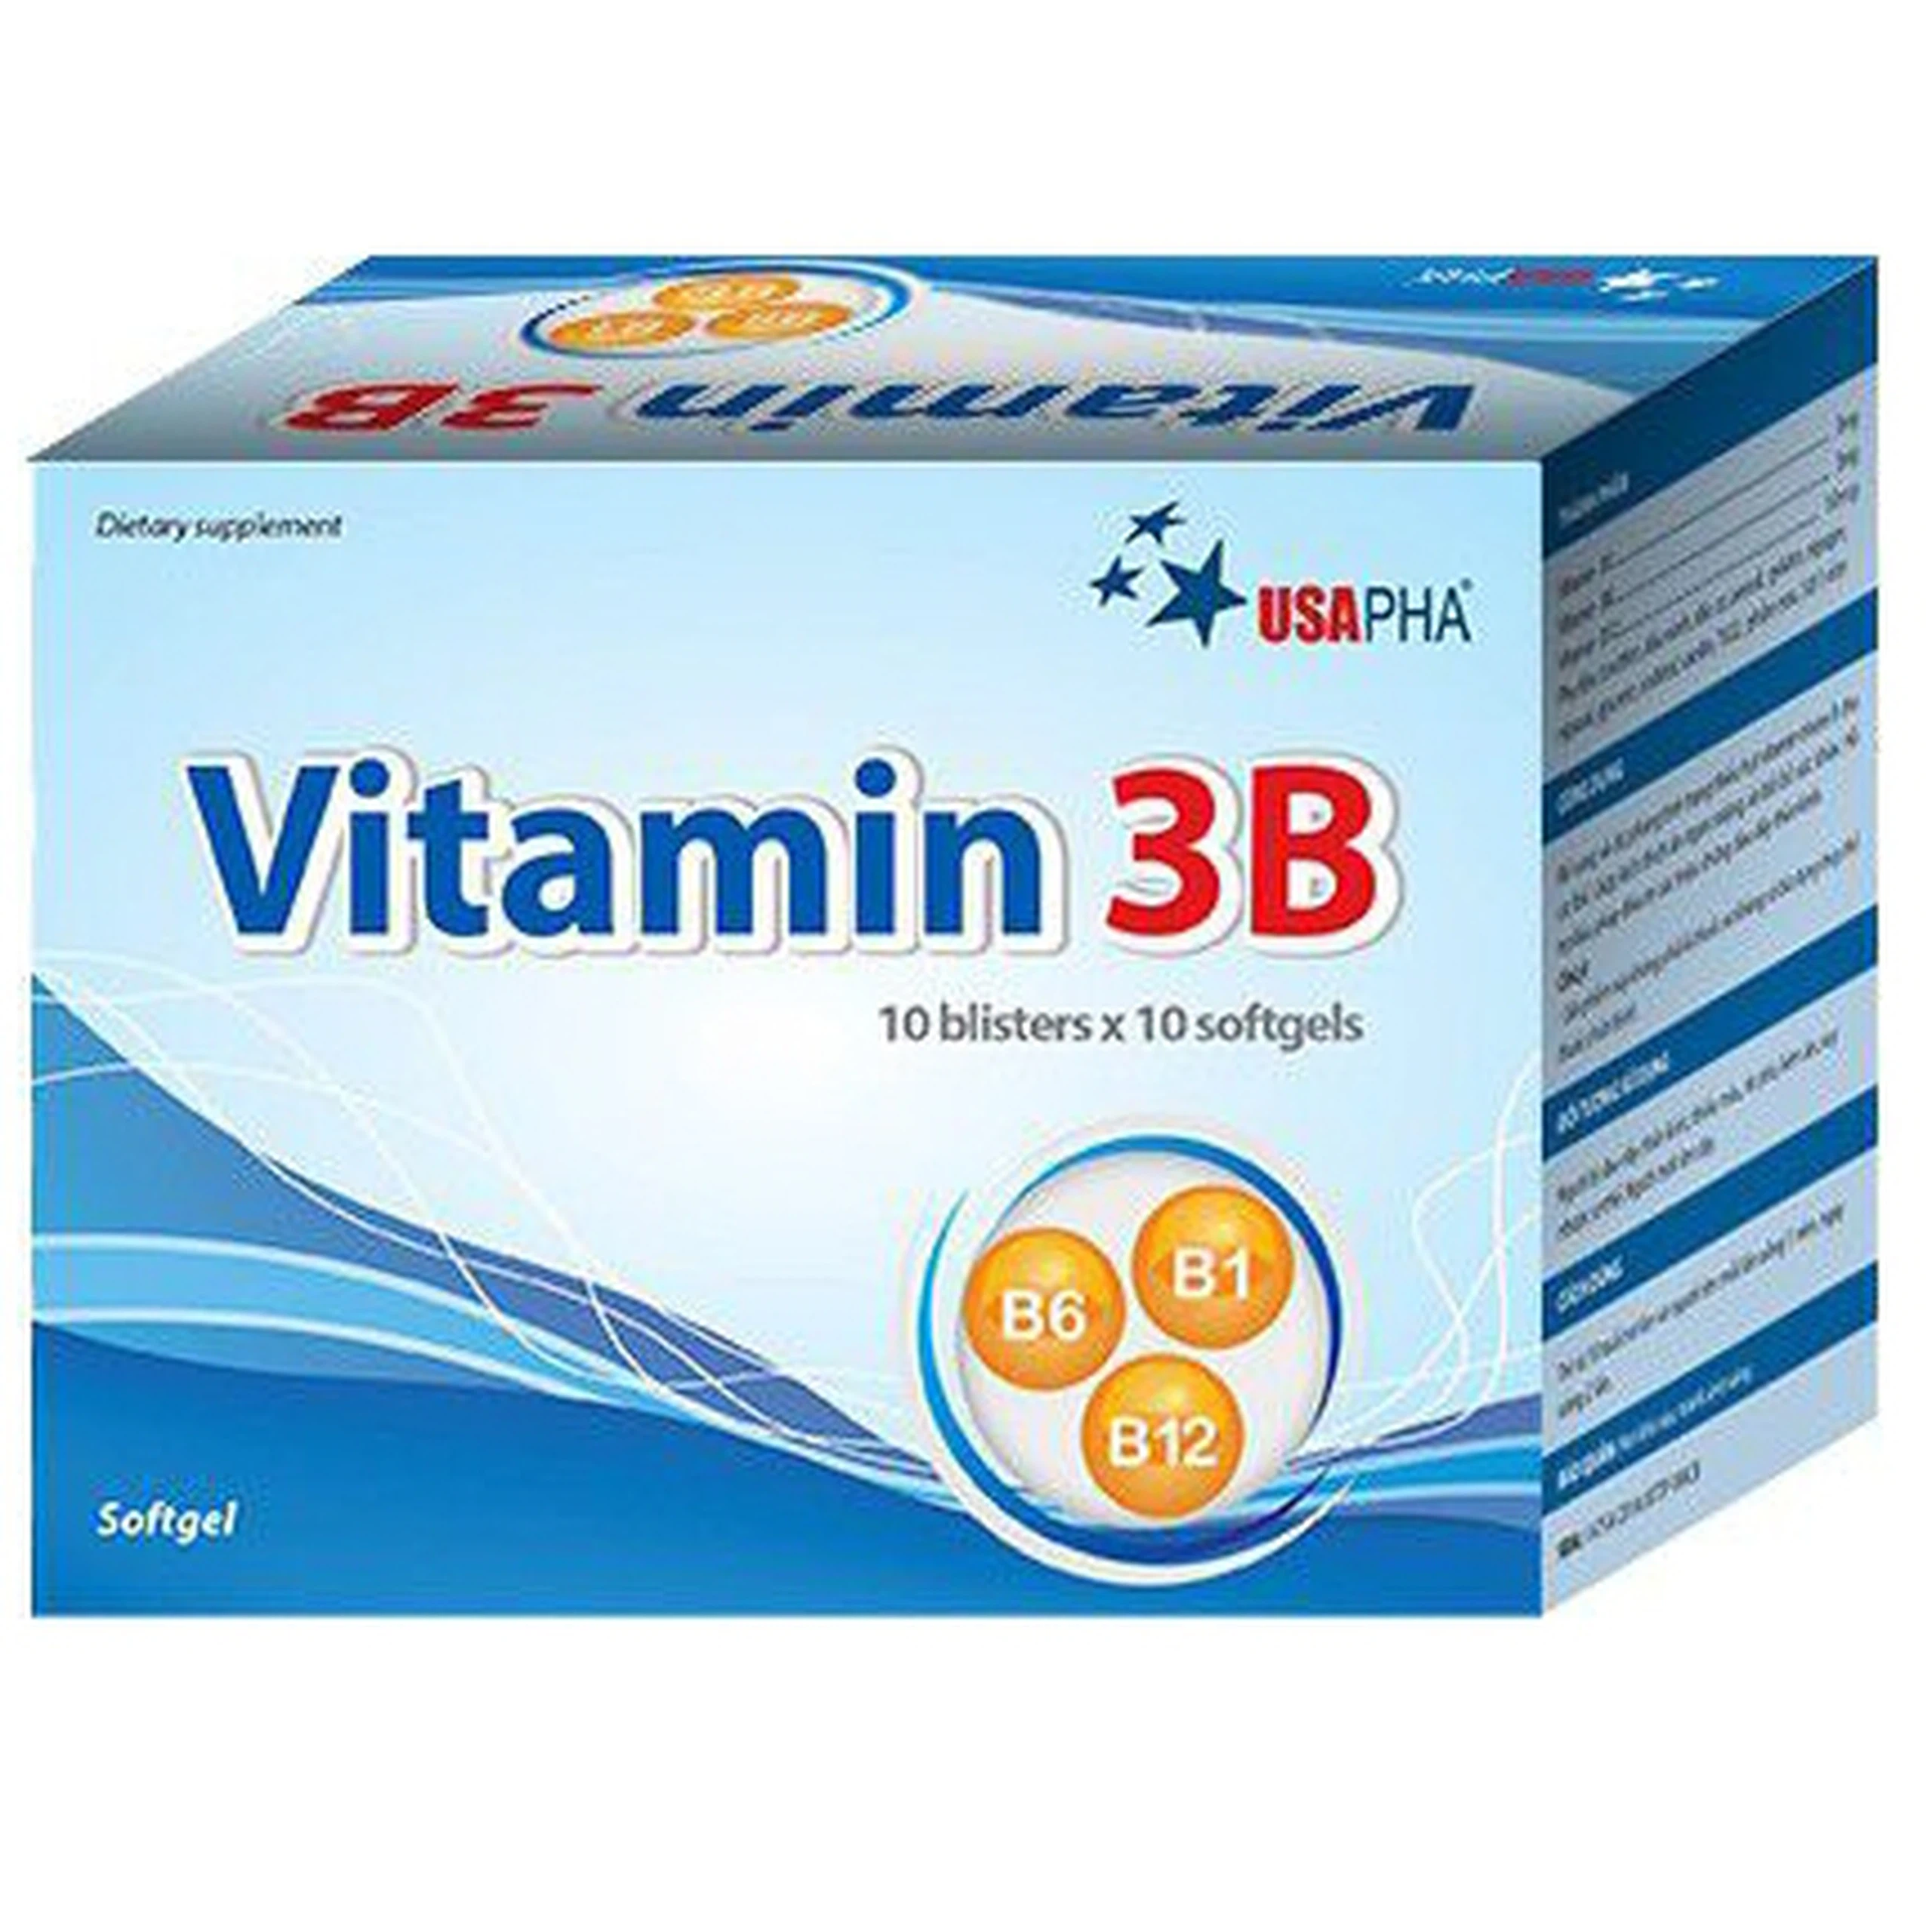 Viên uống Vitamin 3B USAPHA bổ sung Vitamin B cho cơ thể (5 vỉ x 10 viên)